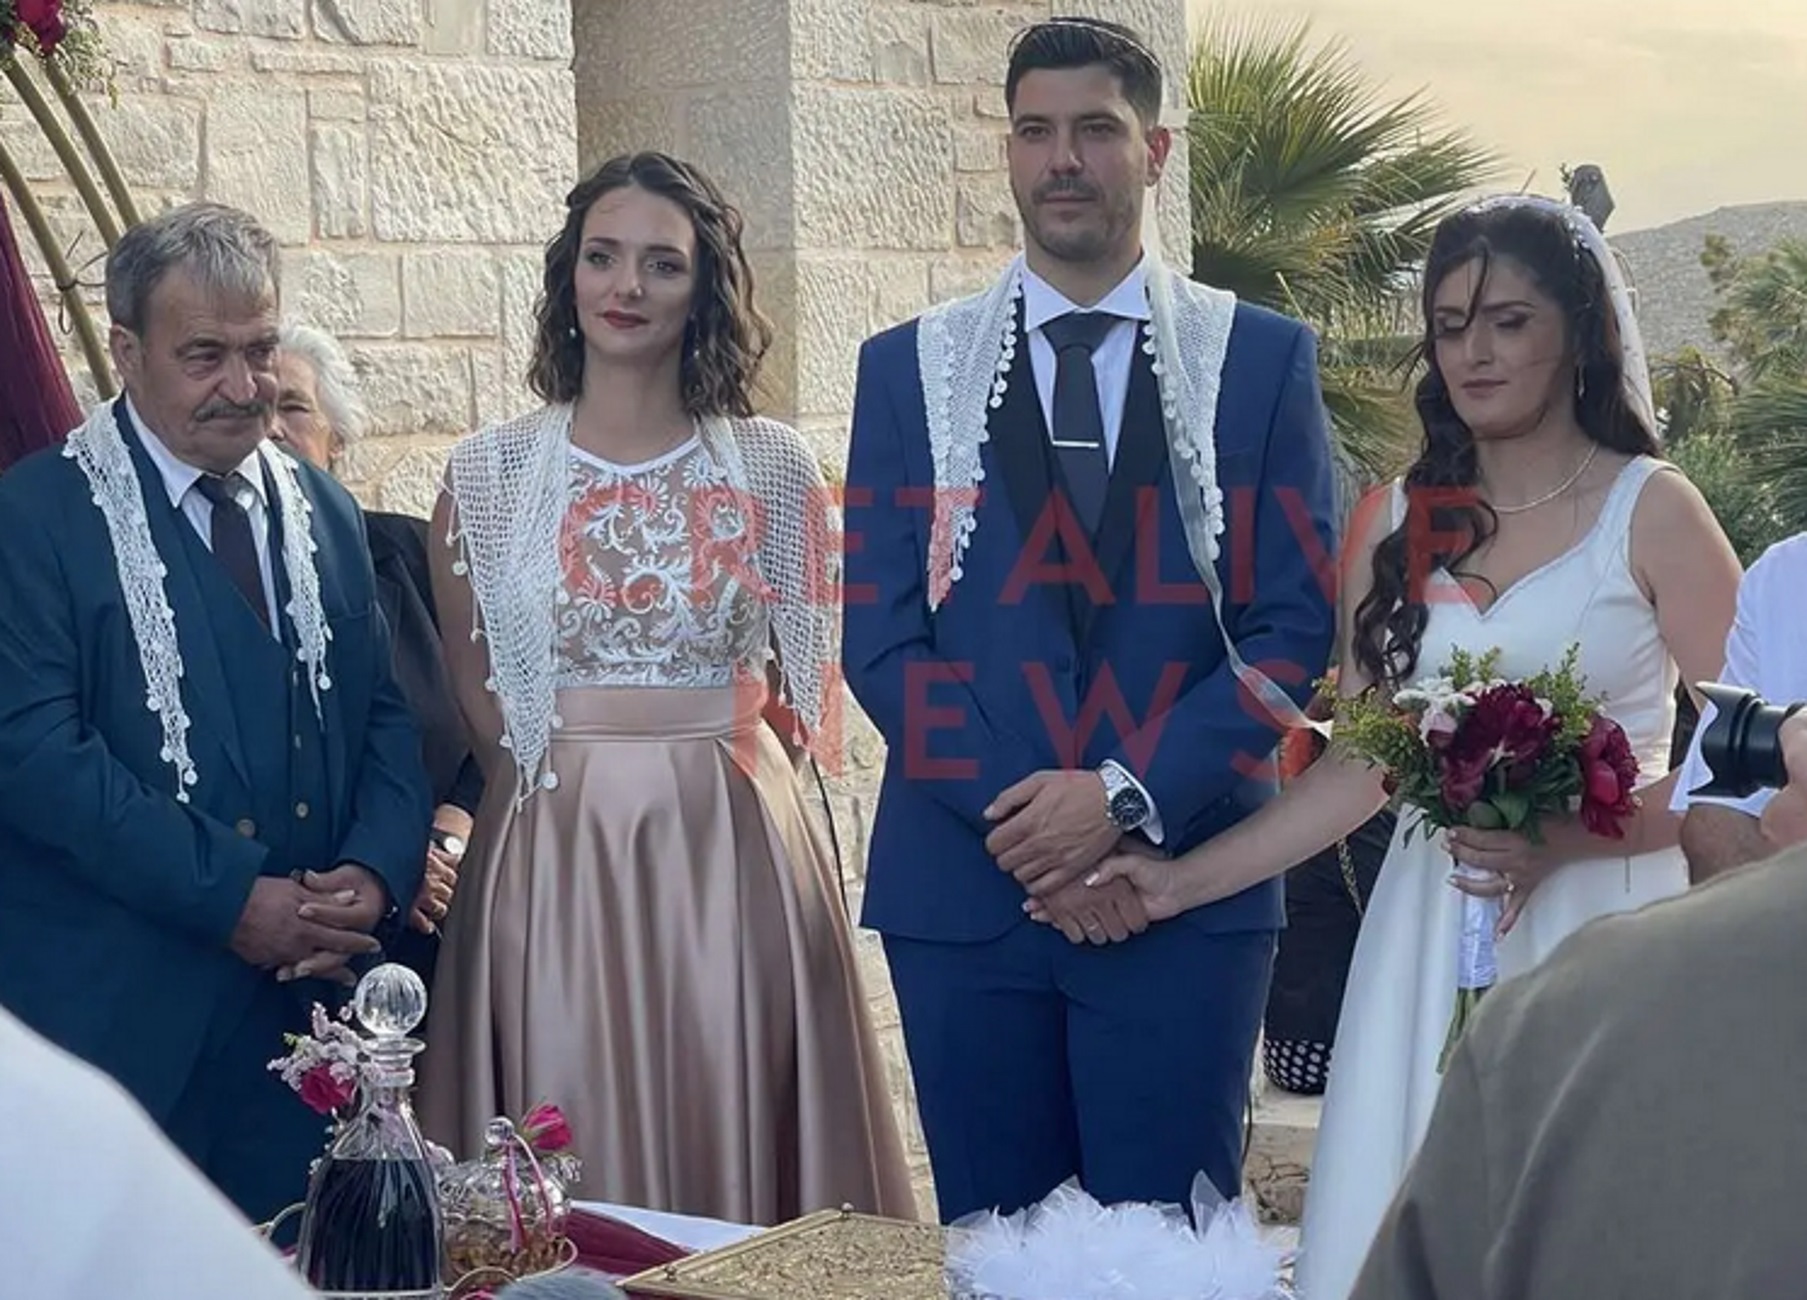 Ηράκλειο: Ο γάμος Κρητικού με Τουρκάλα που έγινε viral – Οι εικόνες και το μήνυμα της νύφης